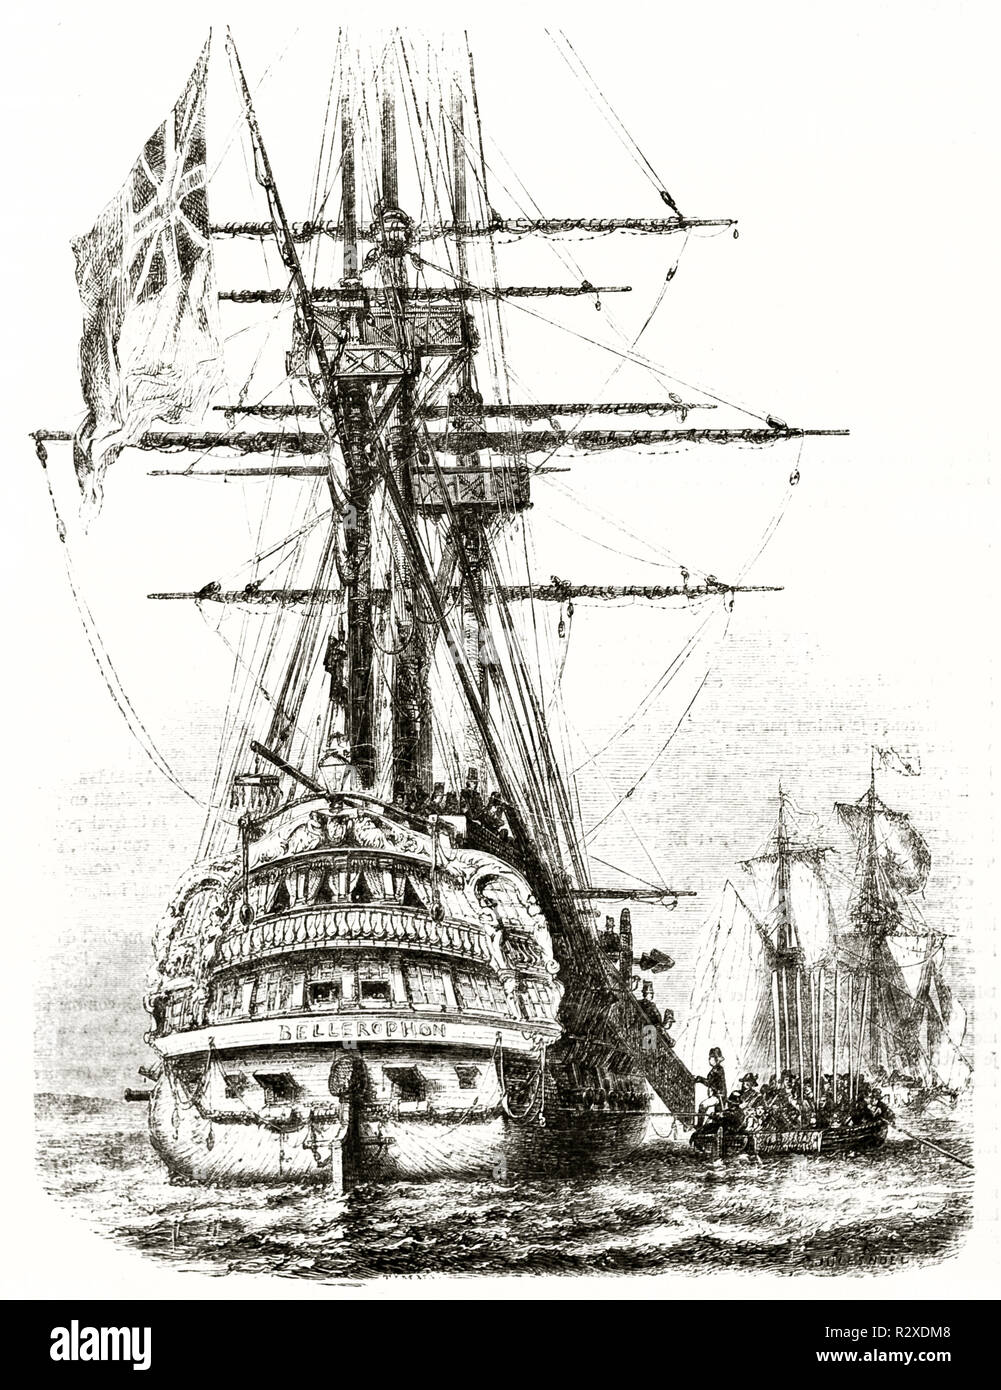 Alte illlustration von HMS Bellerofon, Royal Navy Schiff (boarding Napoleon kapitulation). Von unbekannter Autor, Hrsg. auf Magasin Pittoresque, Paris, 1846 Stockfoto